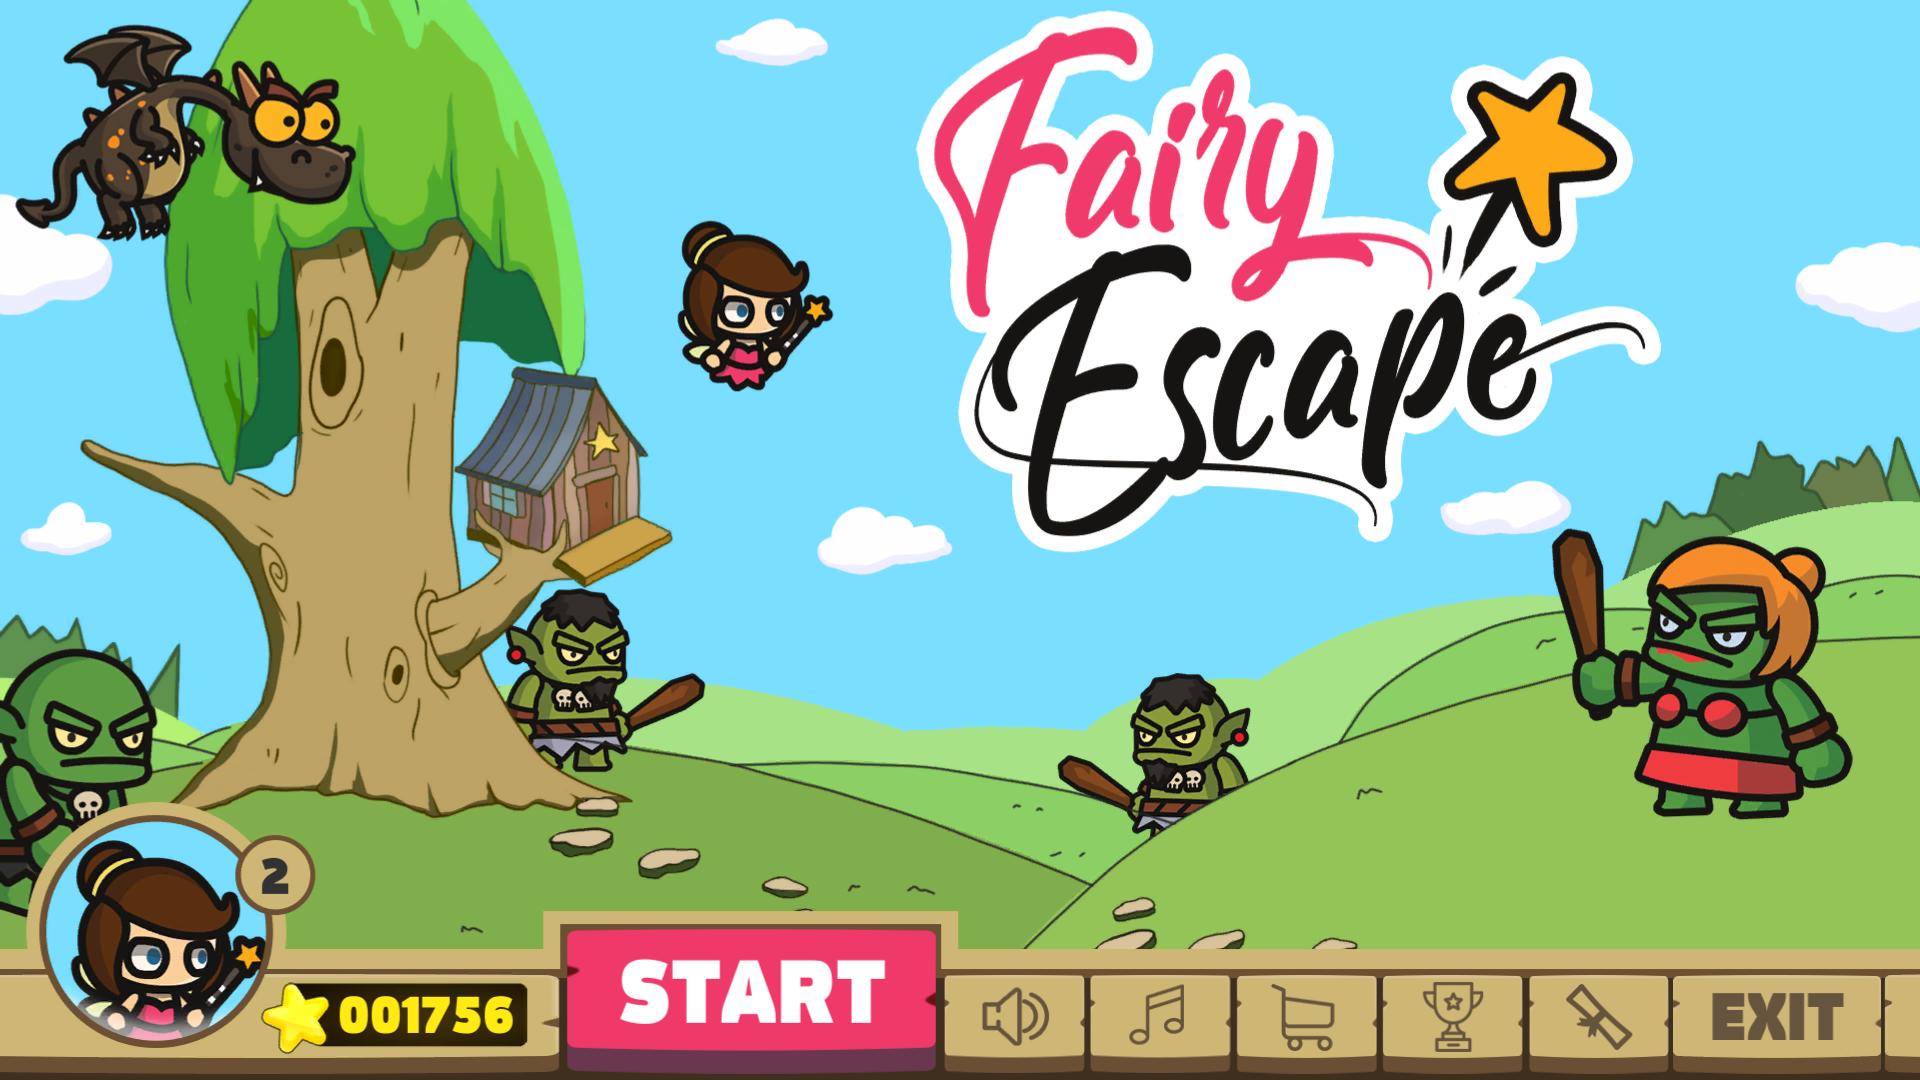 [$ 1.91] Fairy Escape Steam CD Key